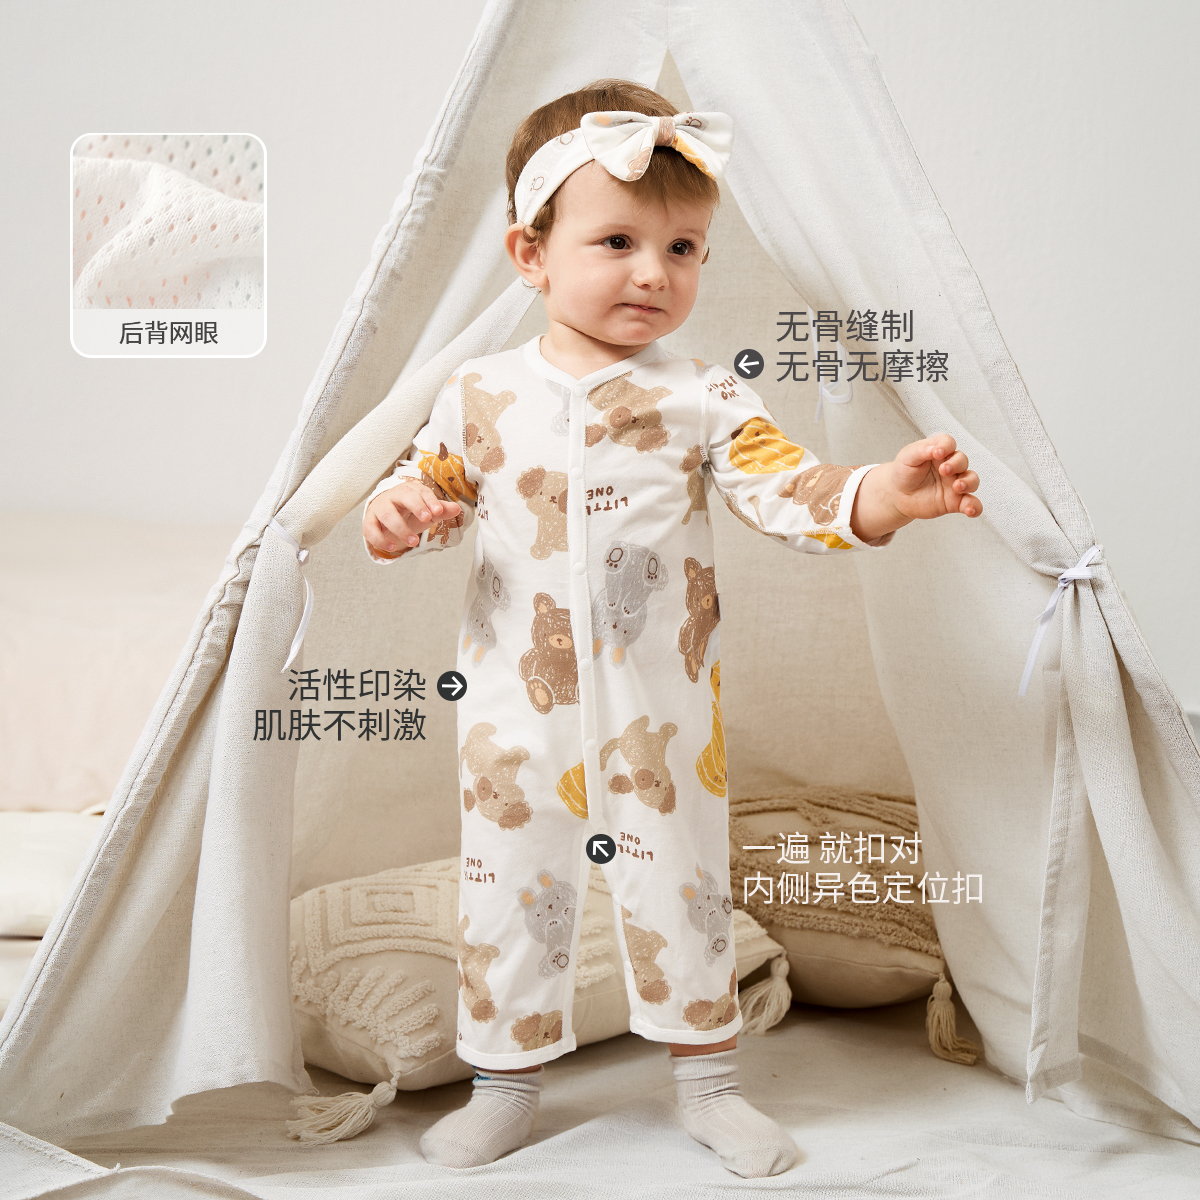 aqpa婴儿衣服宝宝夏季薄款连体衣纯棉新生儿婴幼儿睡衣外出空调服